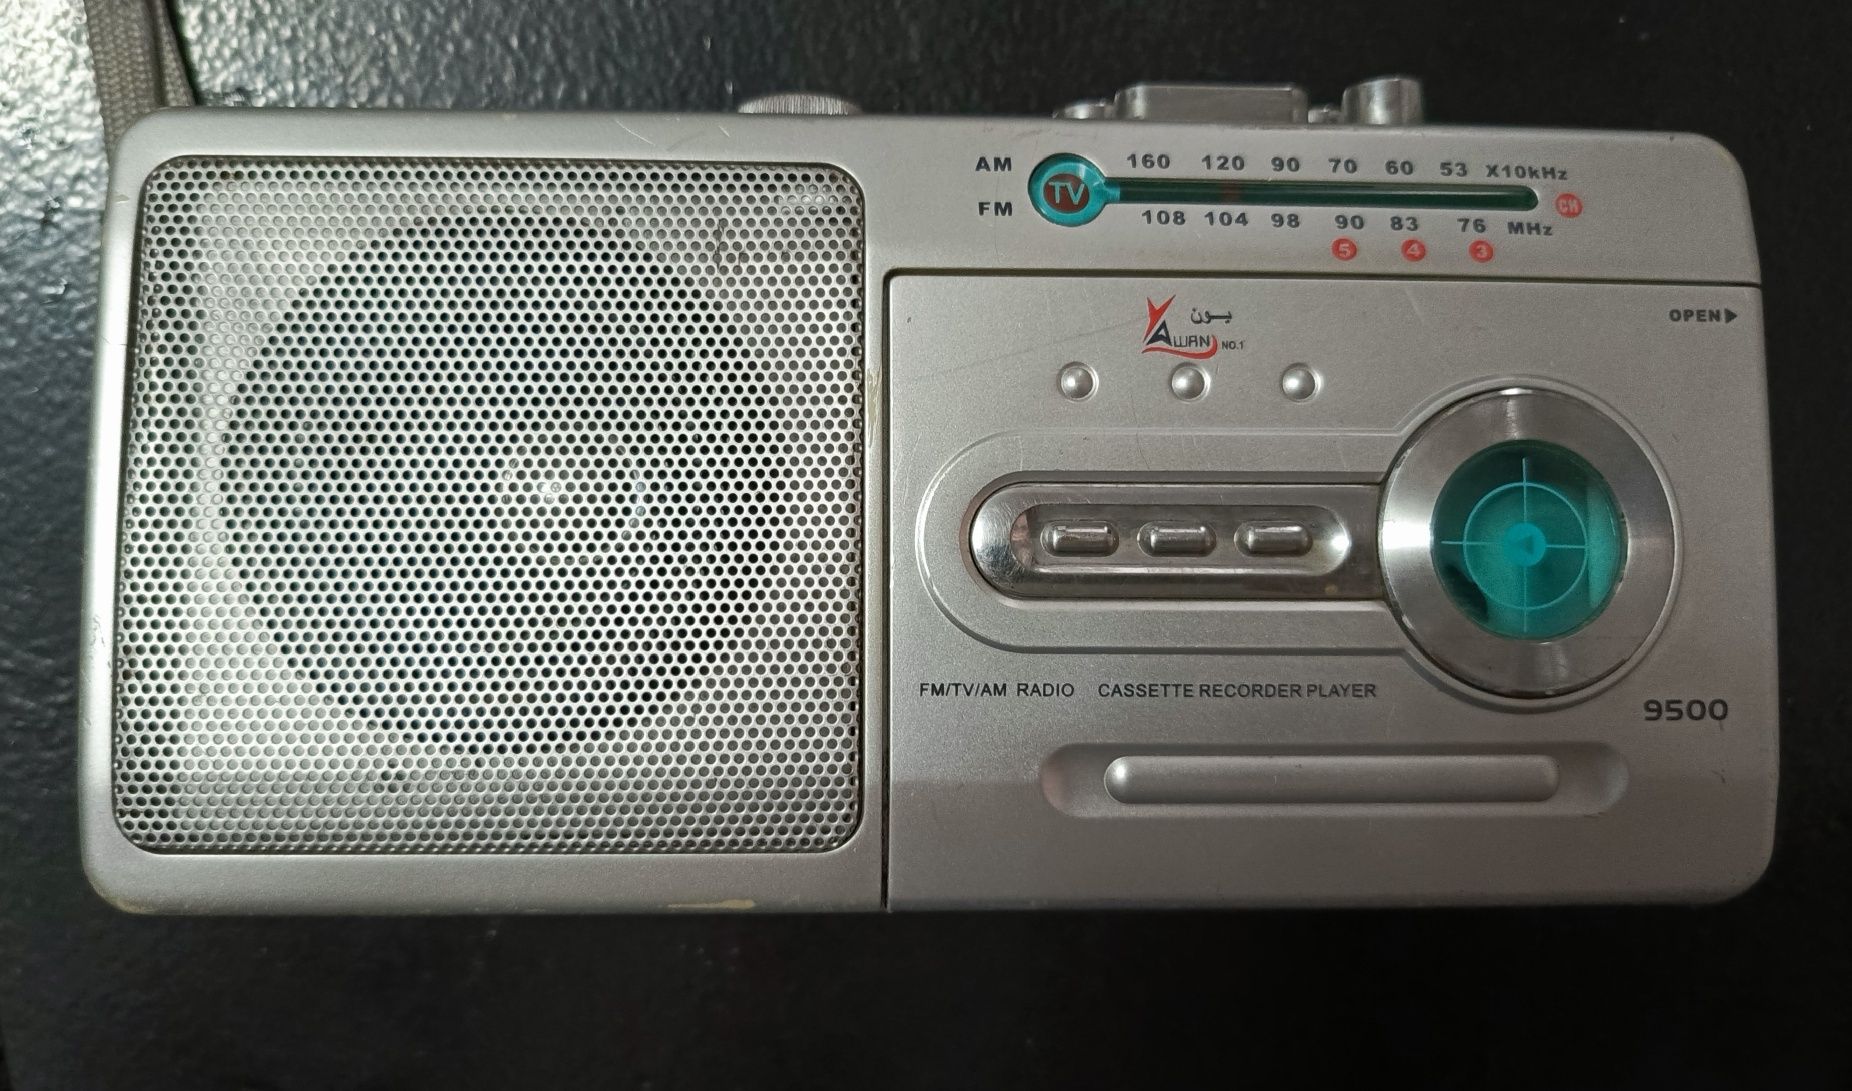 FM радио+кассетный проигрыватель